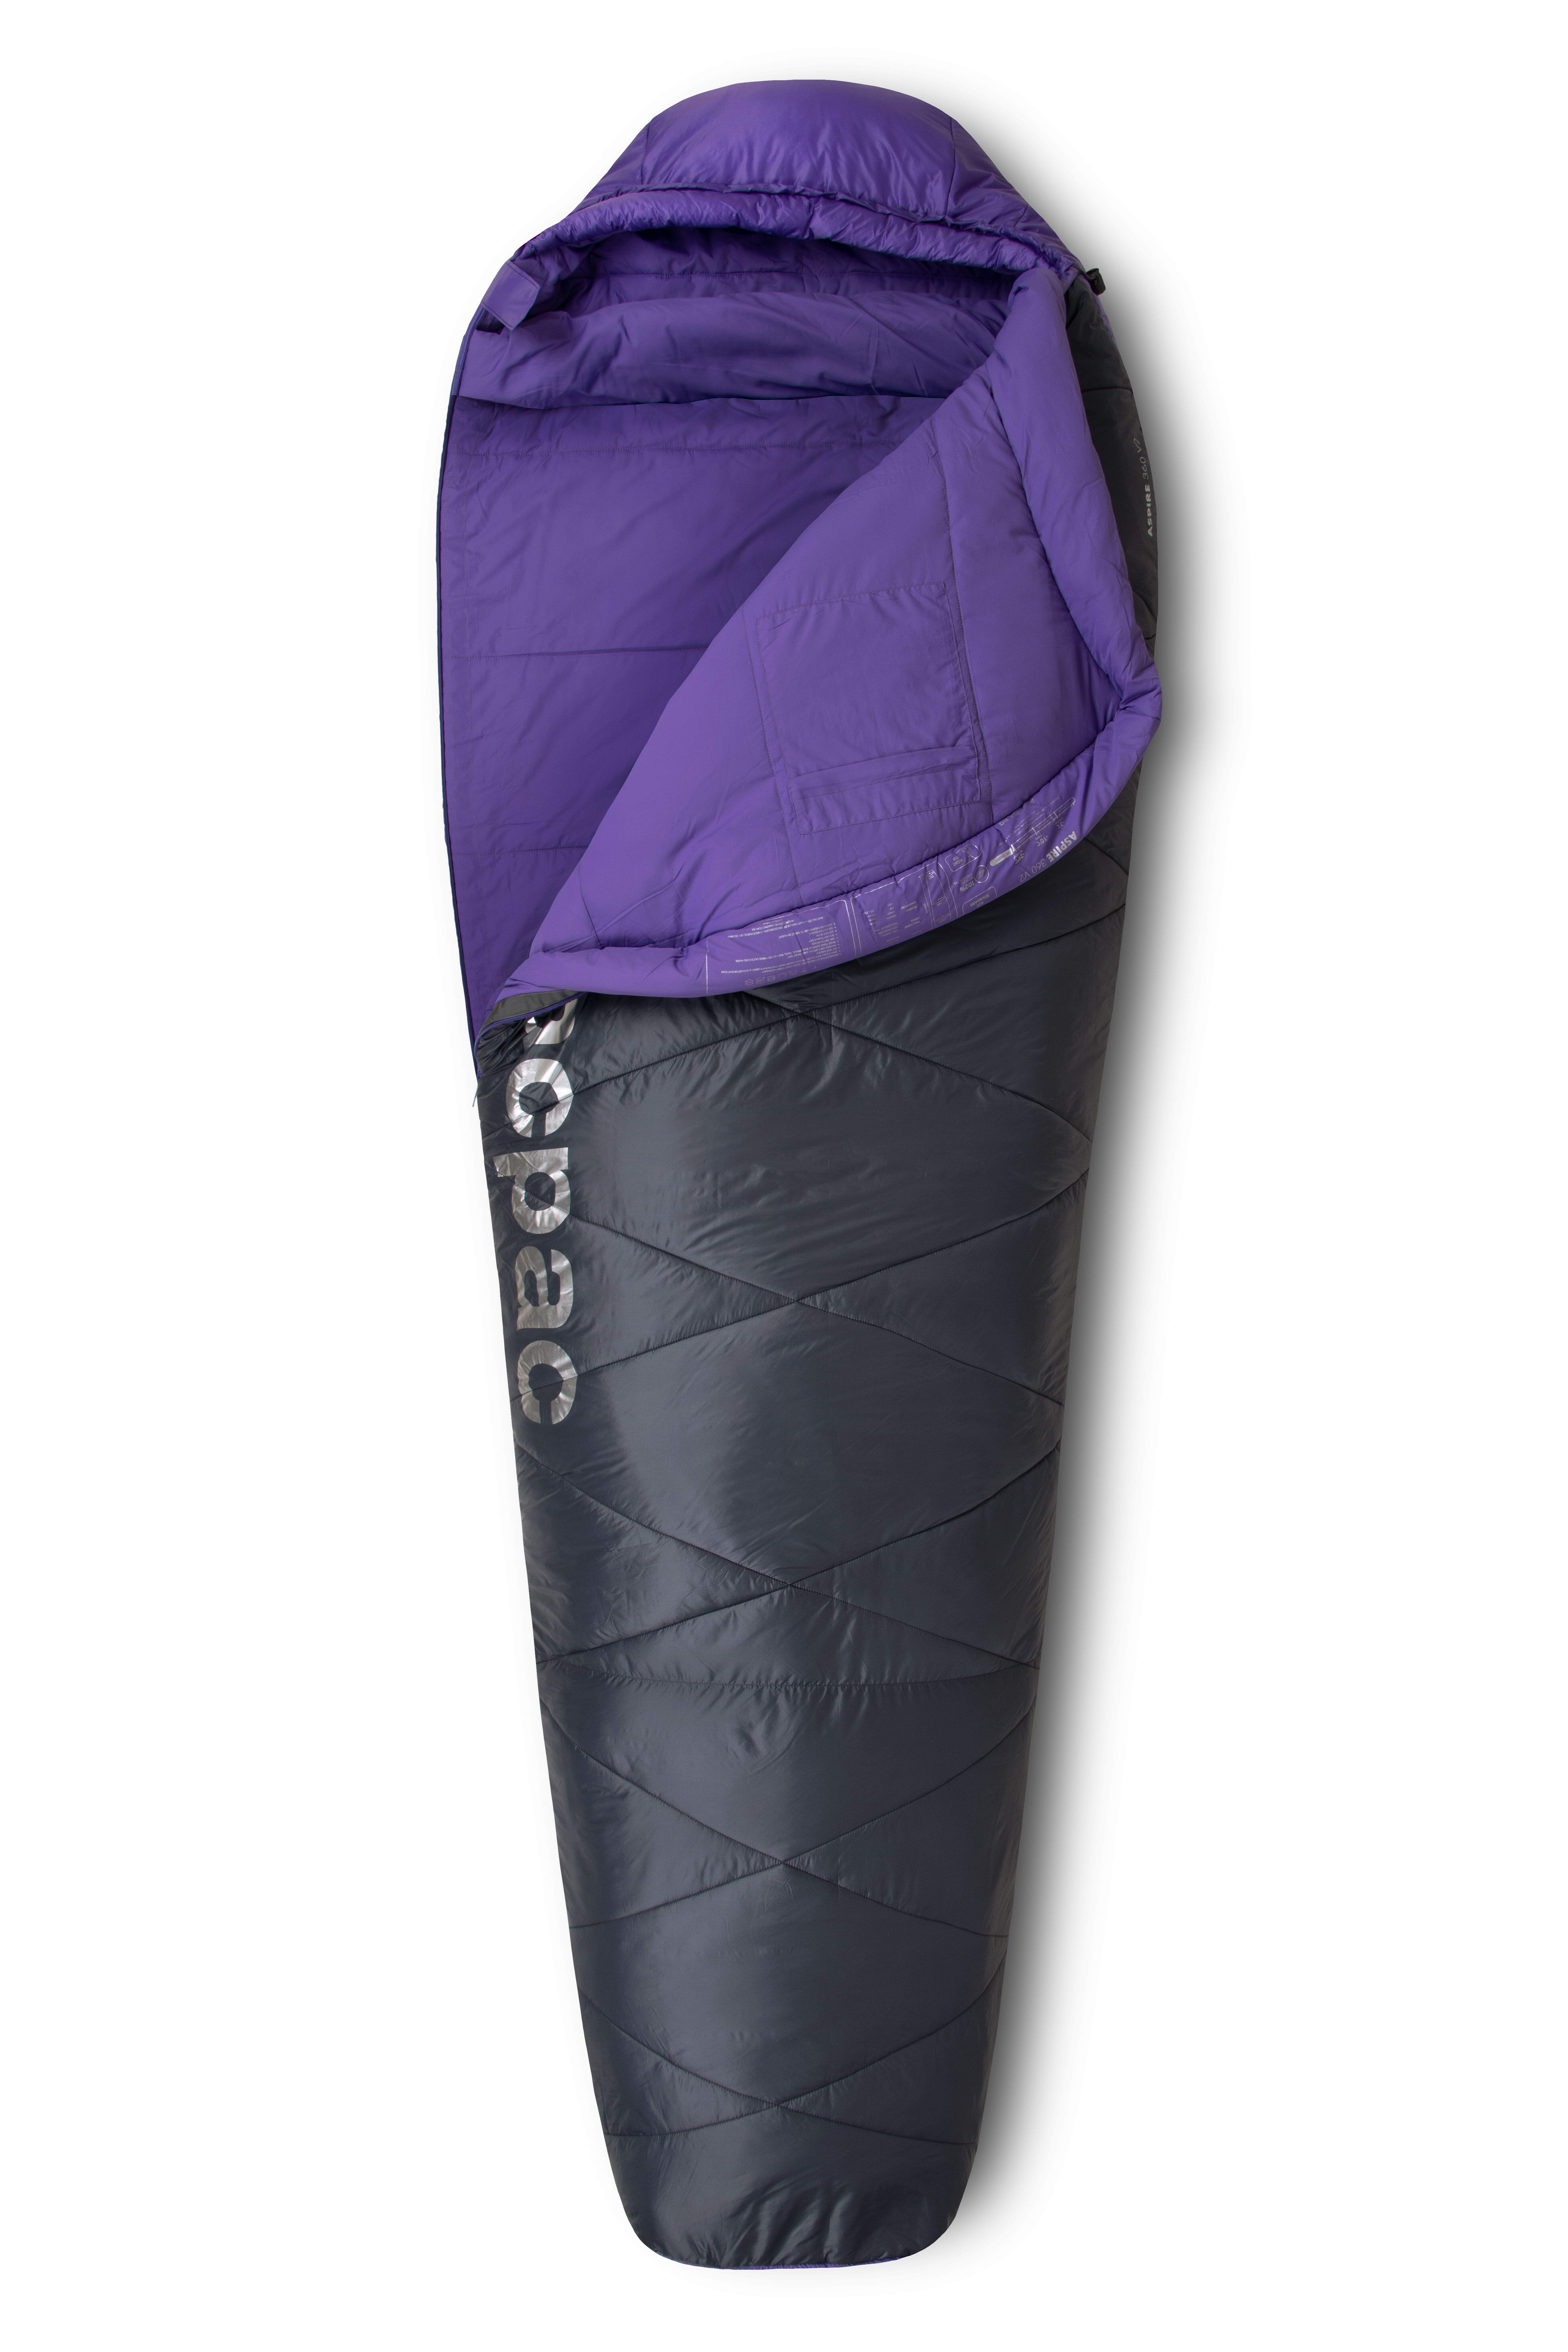 Sierra Designs Shut Eye 20 Synthetic Sleeping Bag | UK | Ultralight Outdoor  Gear